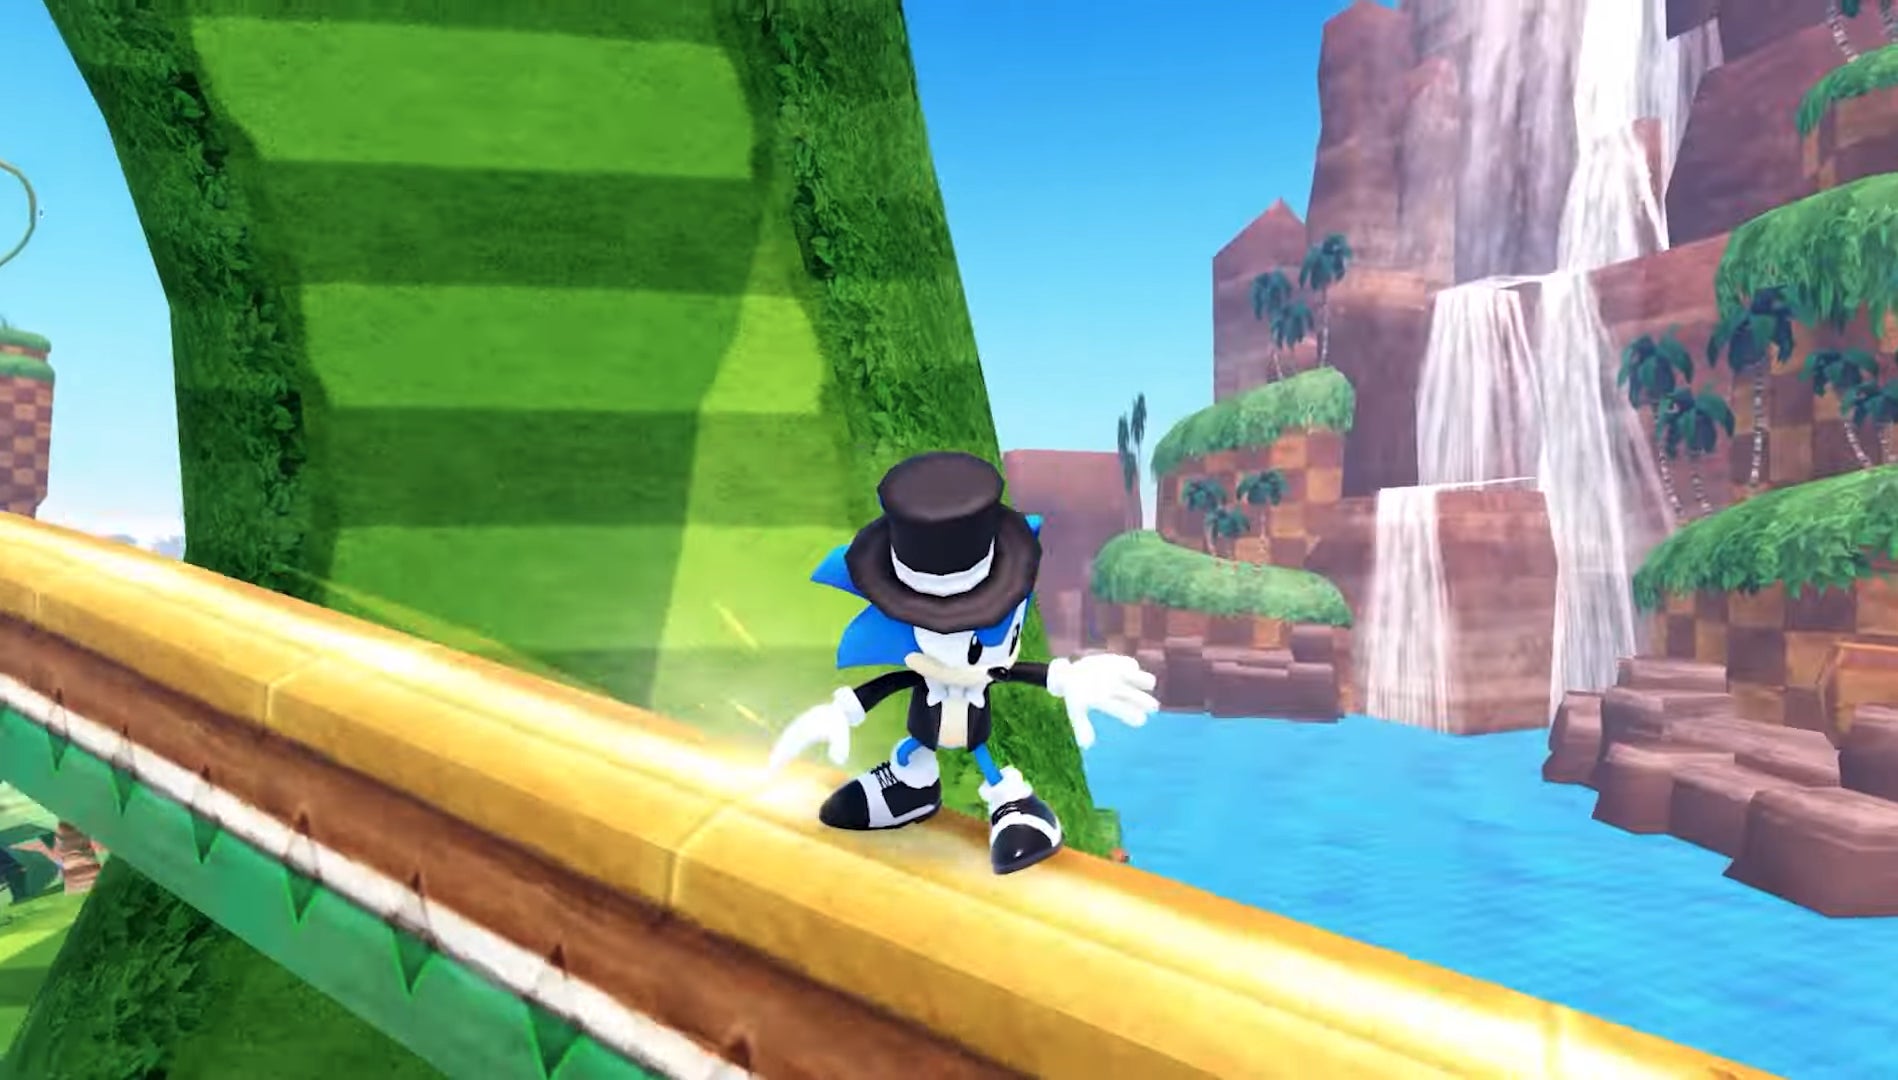 Sonic wordt getoond terwijl hij op een spoorlijn rijdt terwijl hij verkleed is als een handige kleine man.